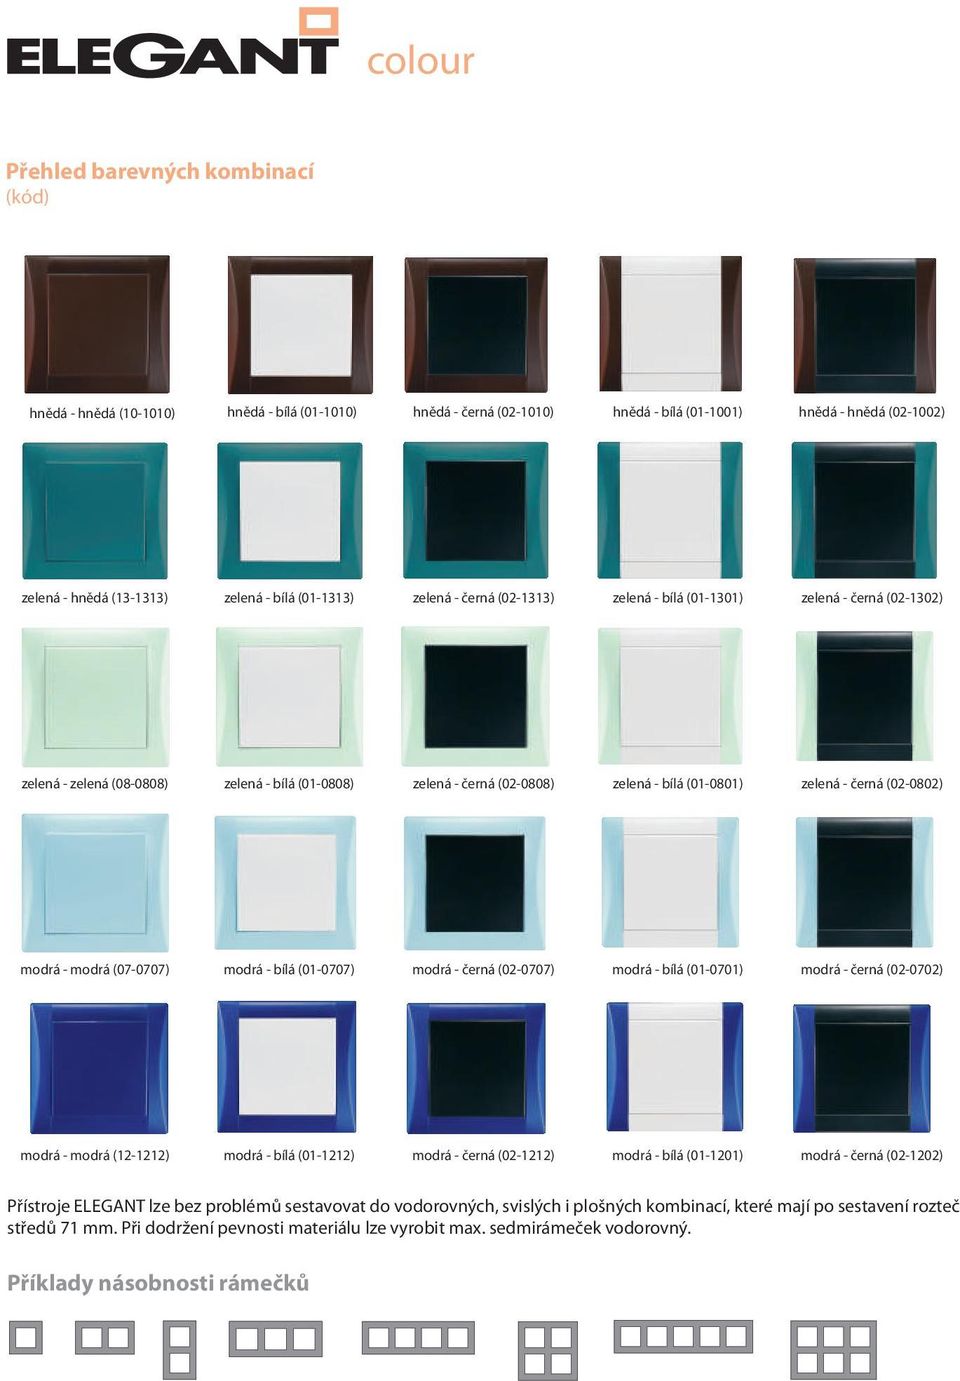 (02-0802) modrá - modrá (07-0707) modrá - bílá (01-0707) modrá - černá (02-0707) modrá - bílá (01-0701) modrá - černá (02-0702) modrá - modrá (12-1212) modrá - bílá (01-1212) modrá - černá (02-1212)